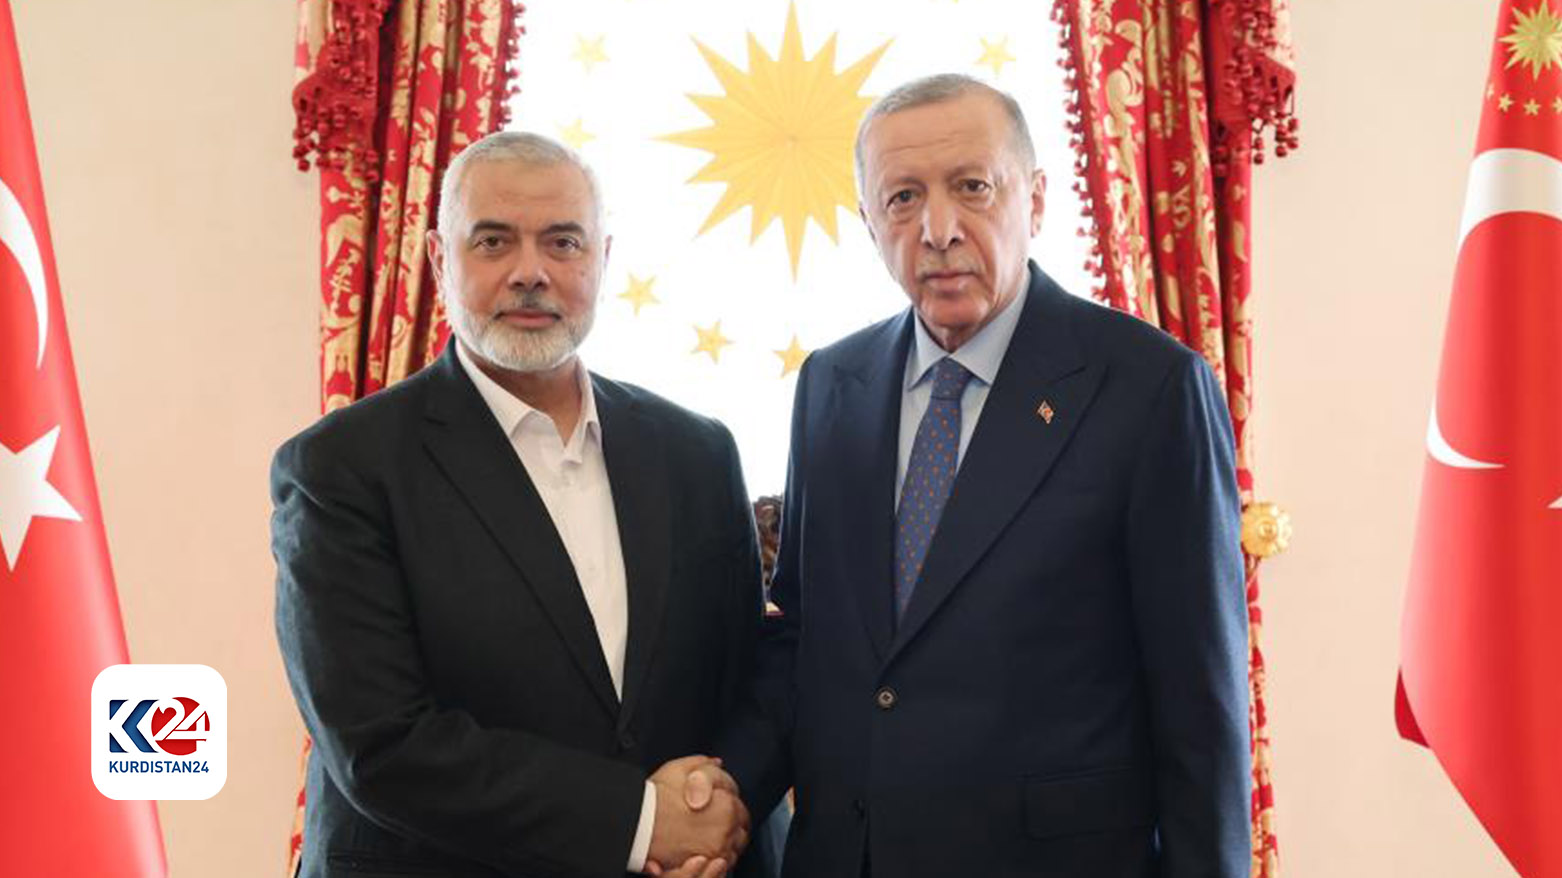 الرئيس التركي رجب طيب أردوغان ورئيس المكتب السياسي لحركة حماس إسماعيل هنية